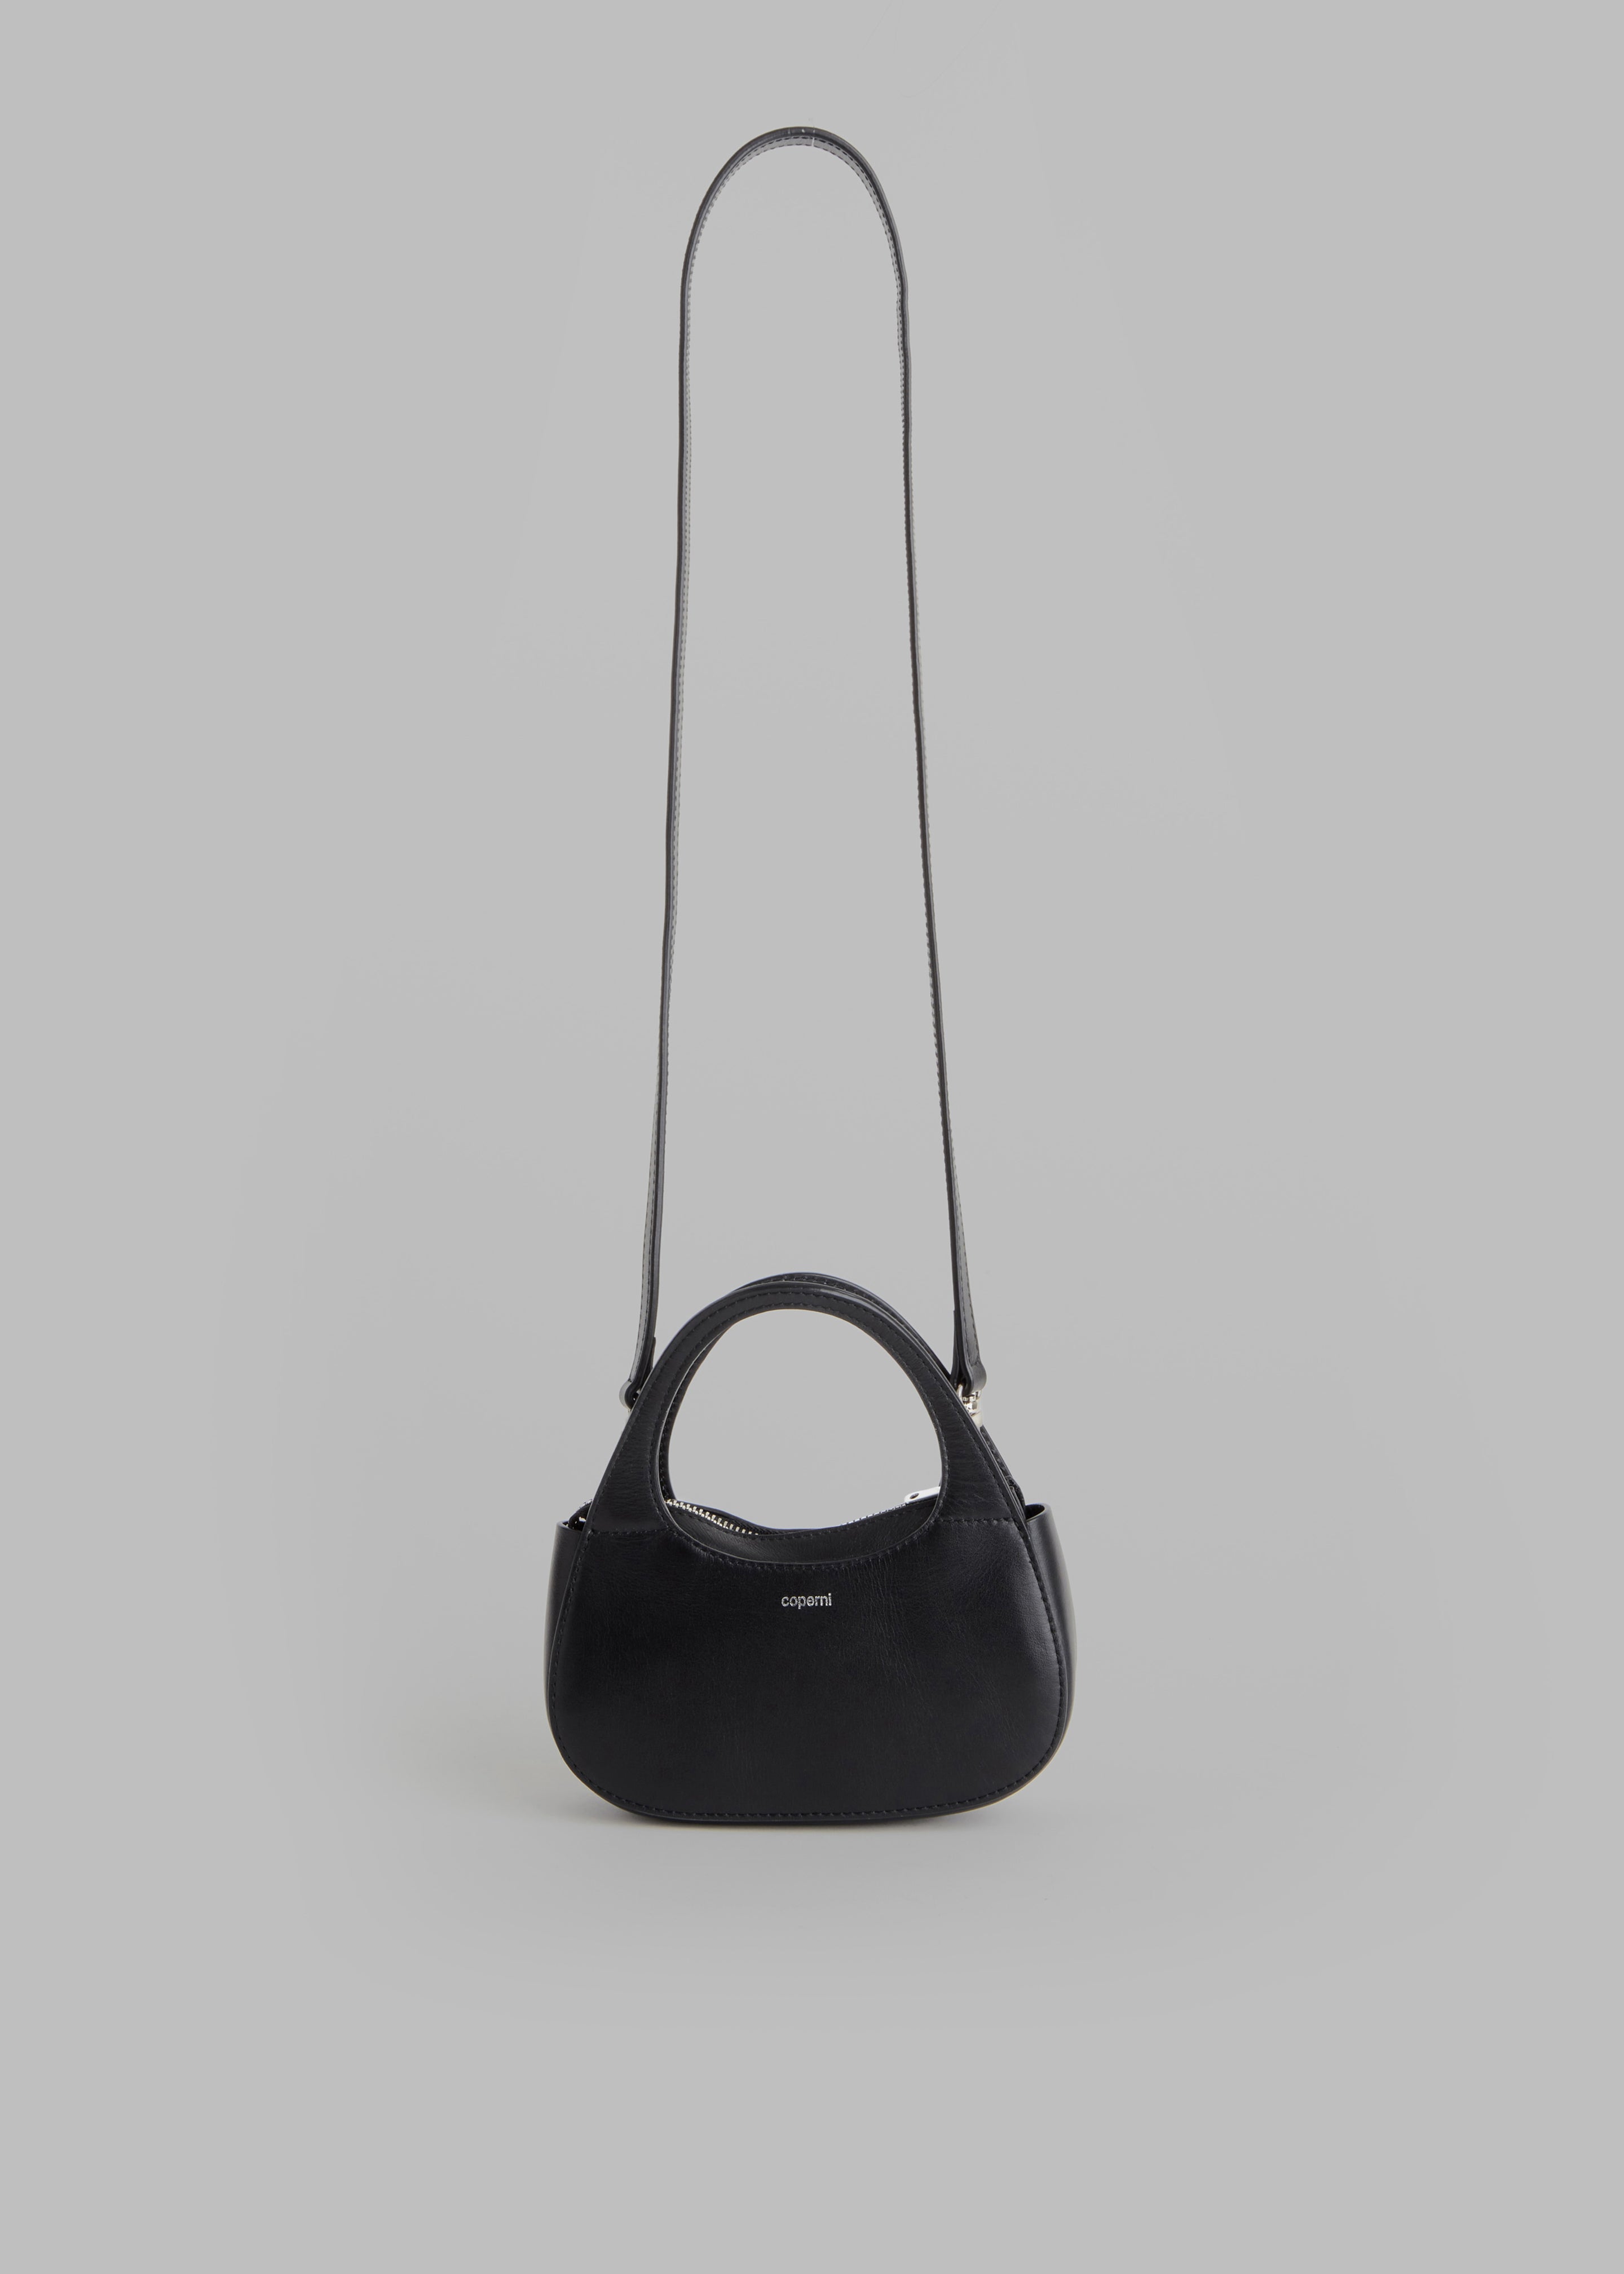 Coperni Micro Baguette Swipe Bag - Black - 1